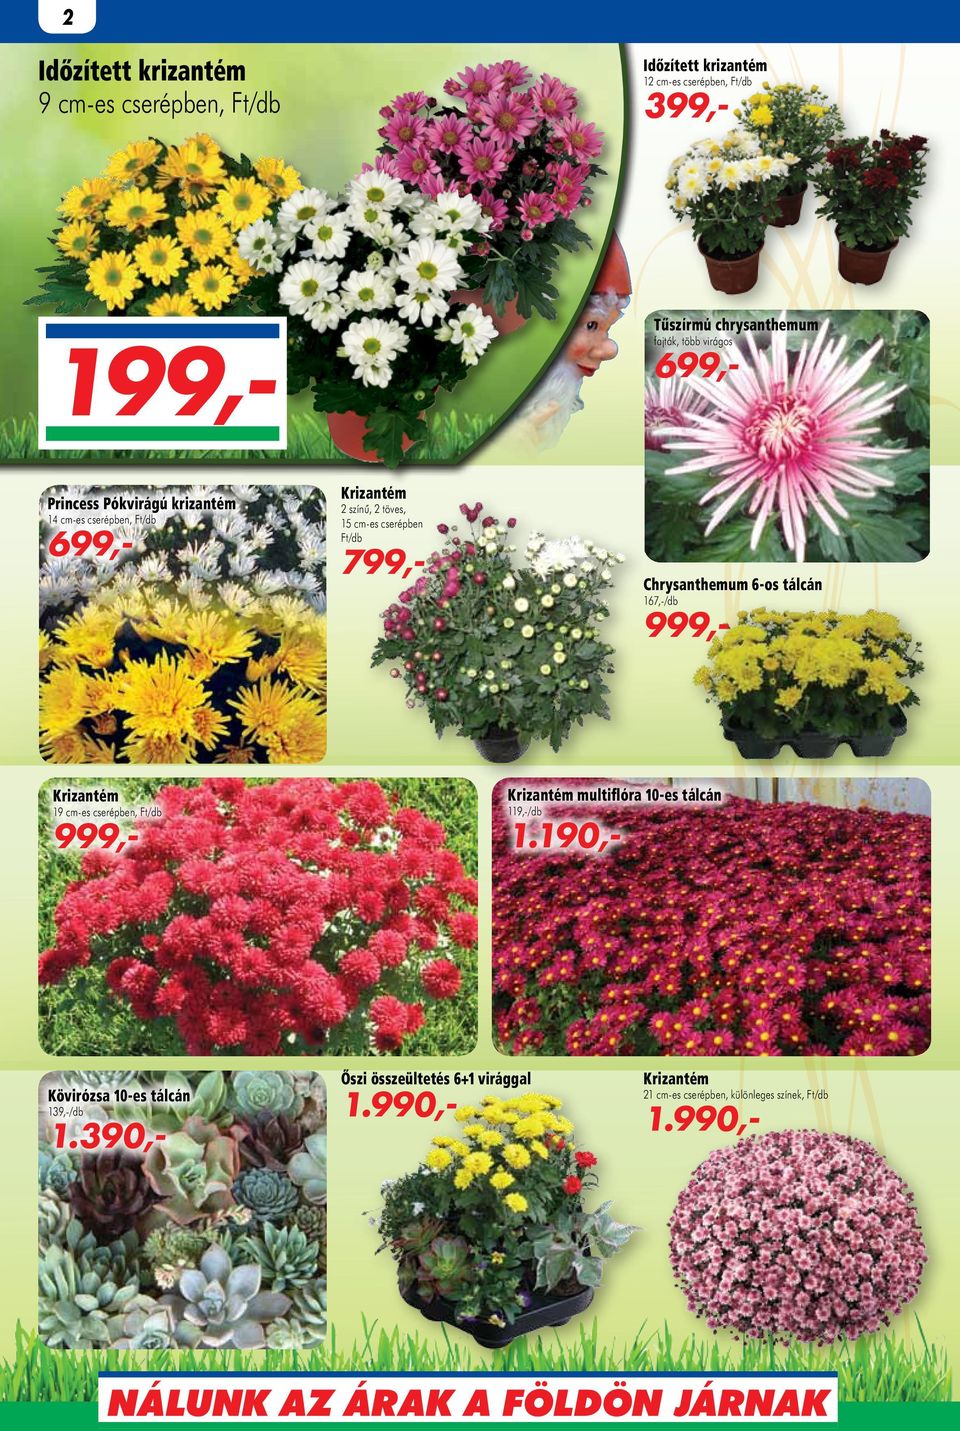 Chrysanthemum 6-os tálcán 167,-/db 999,- Krizantém Krizantém multiflóra 10-es tálcán 999,- 1.